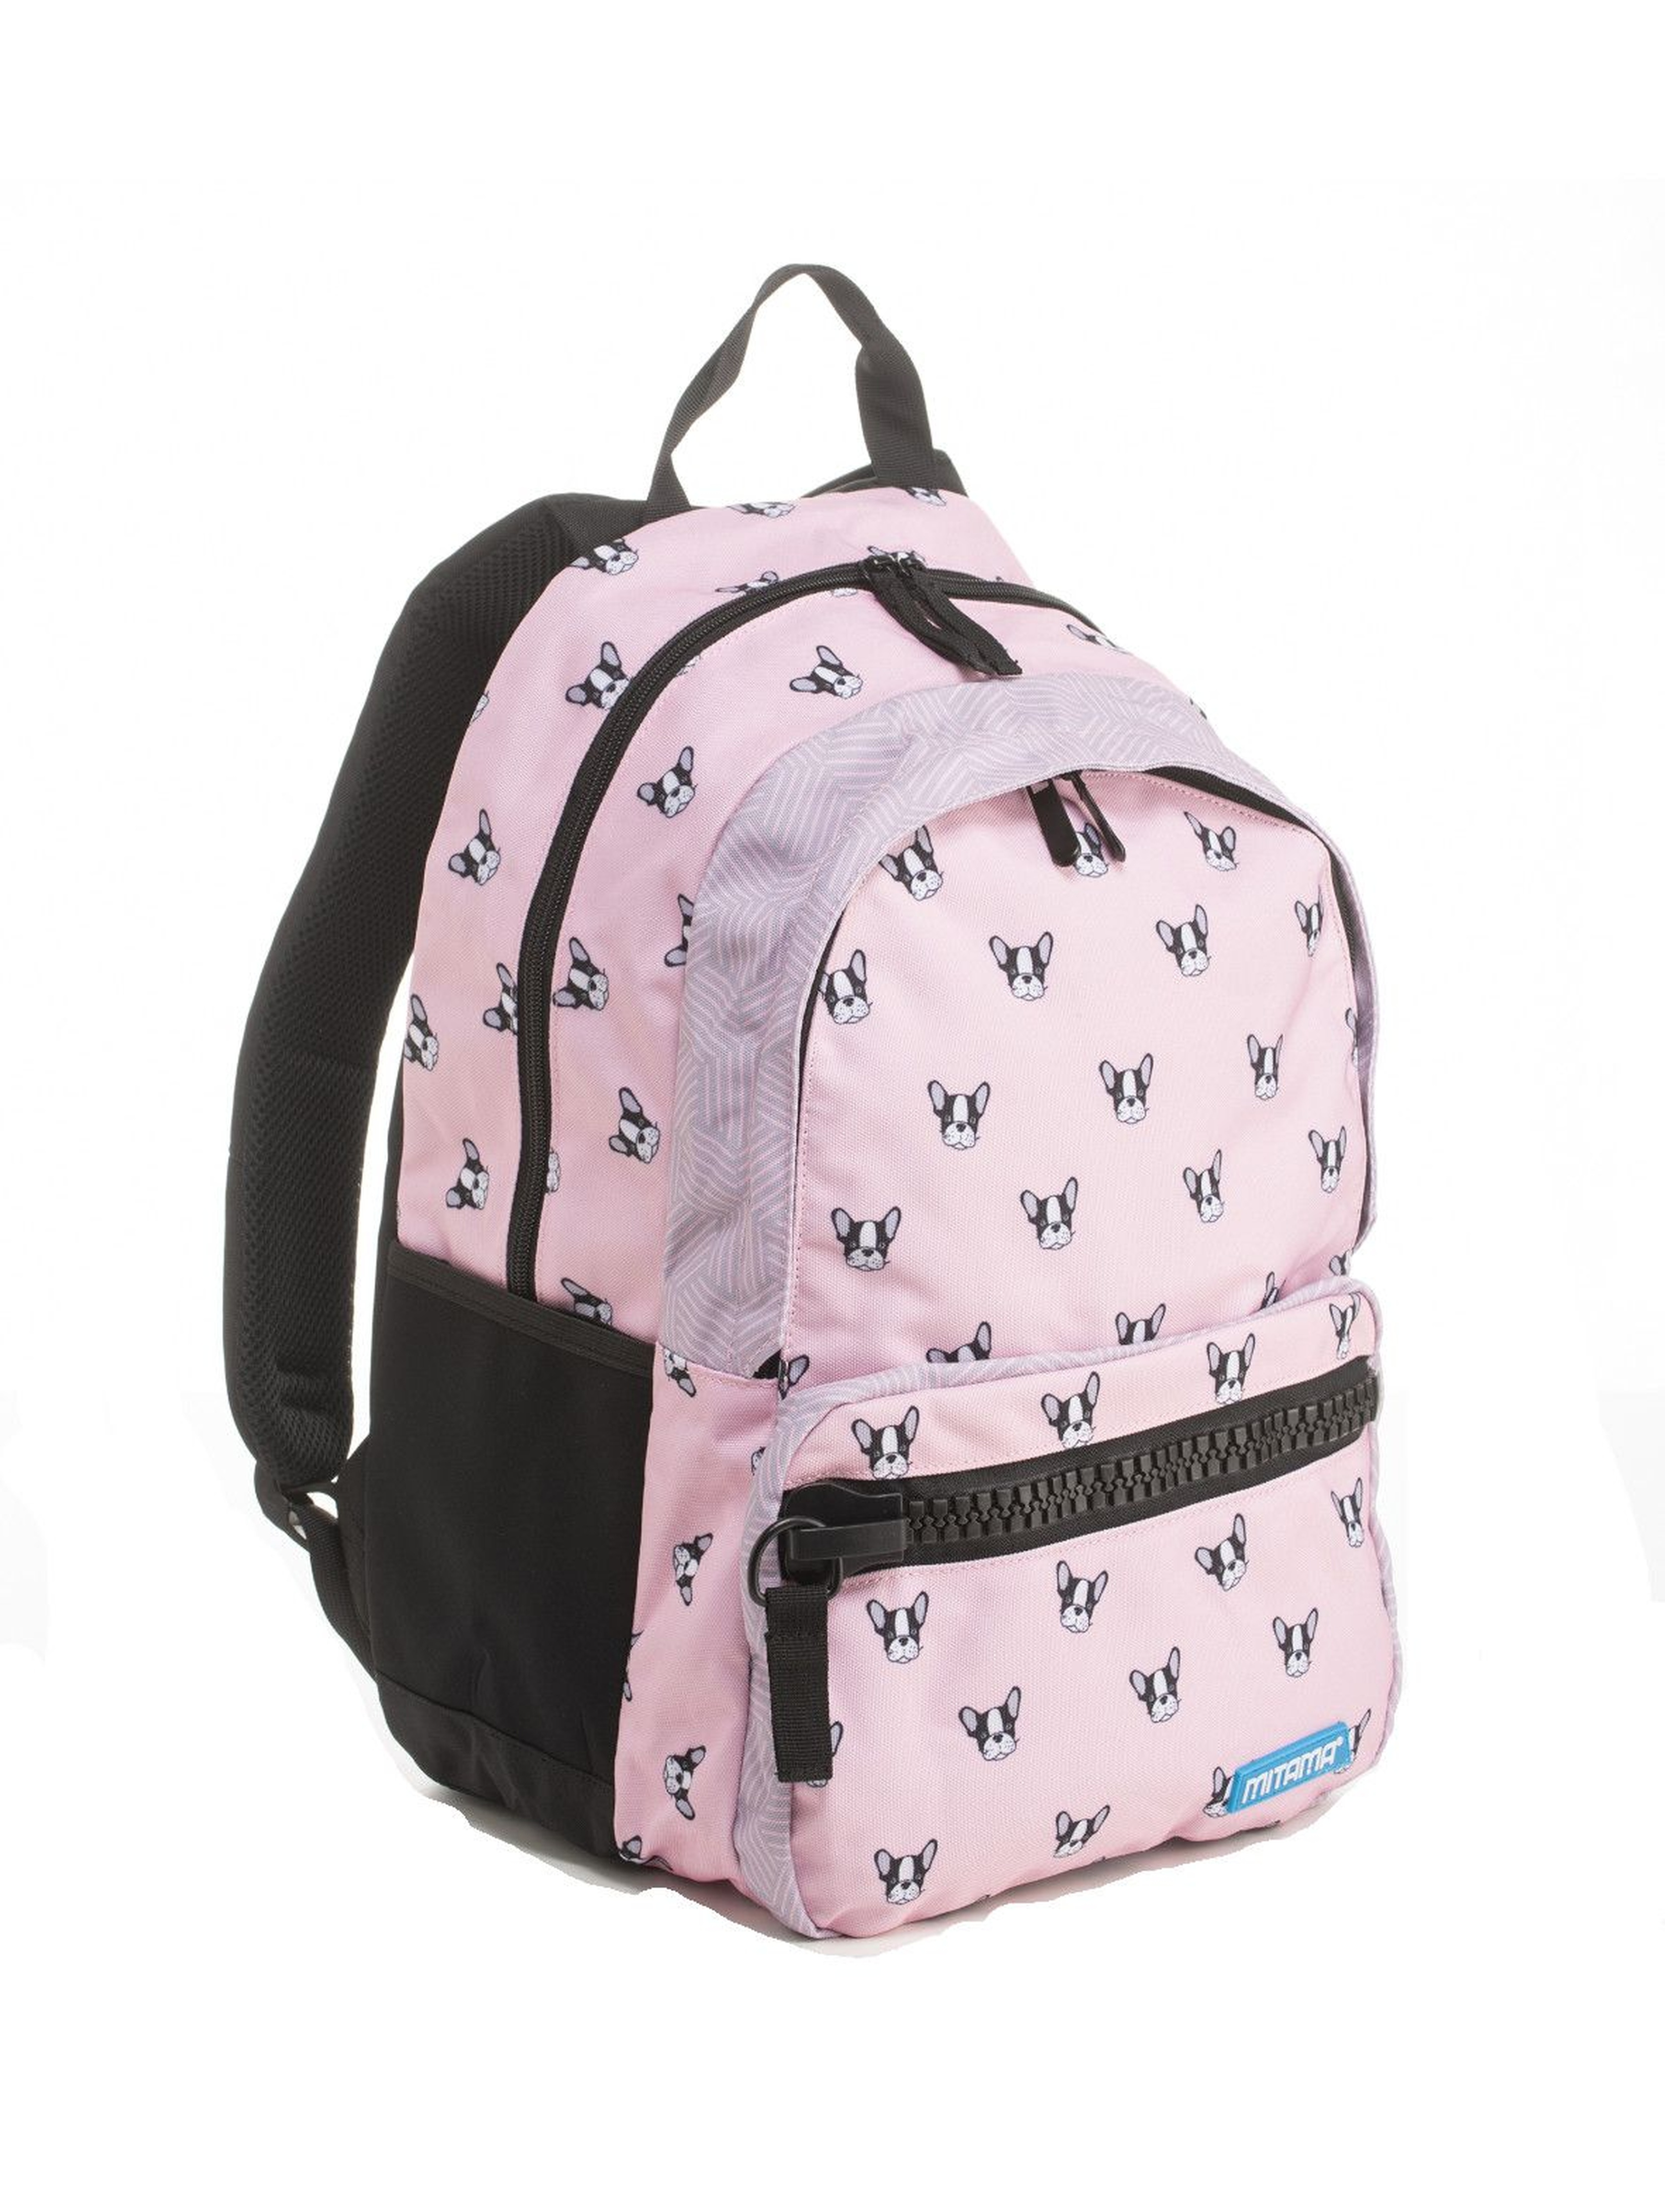 Plecak dziewczęcy szkolny  w pieski - różowy